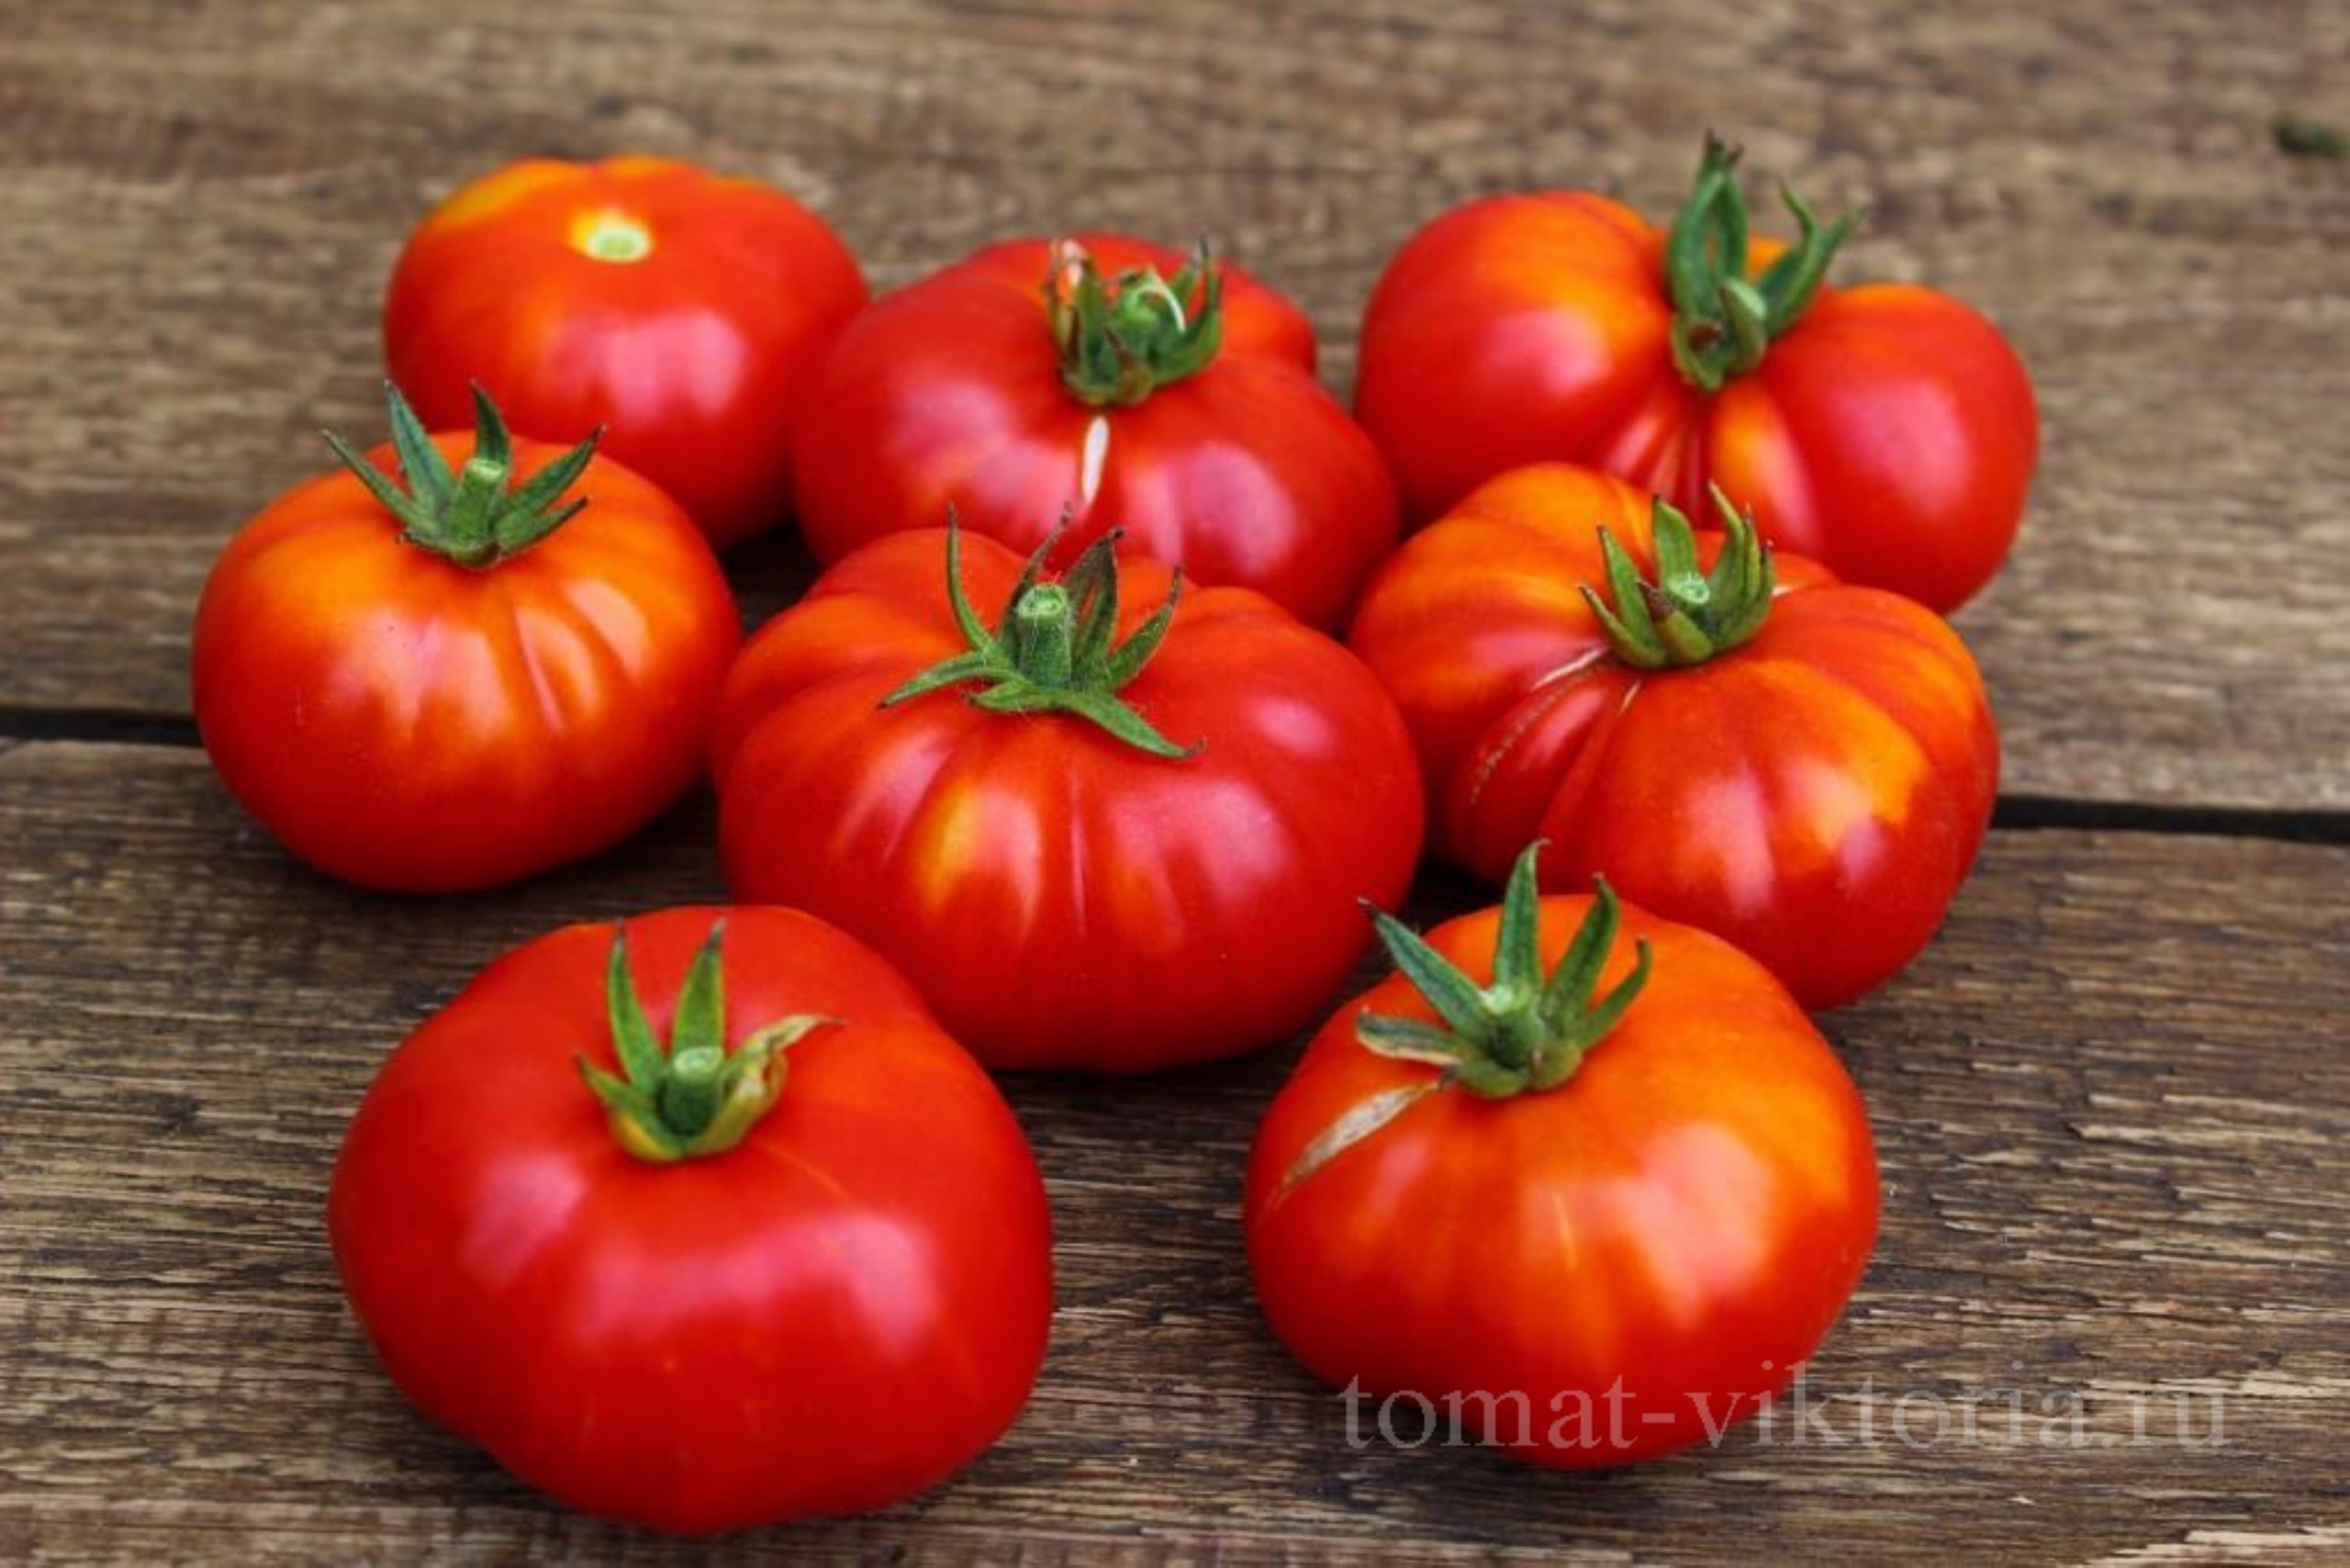 Как заказать - Томаты у Виктории -  семена томатов